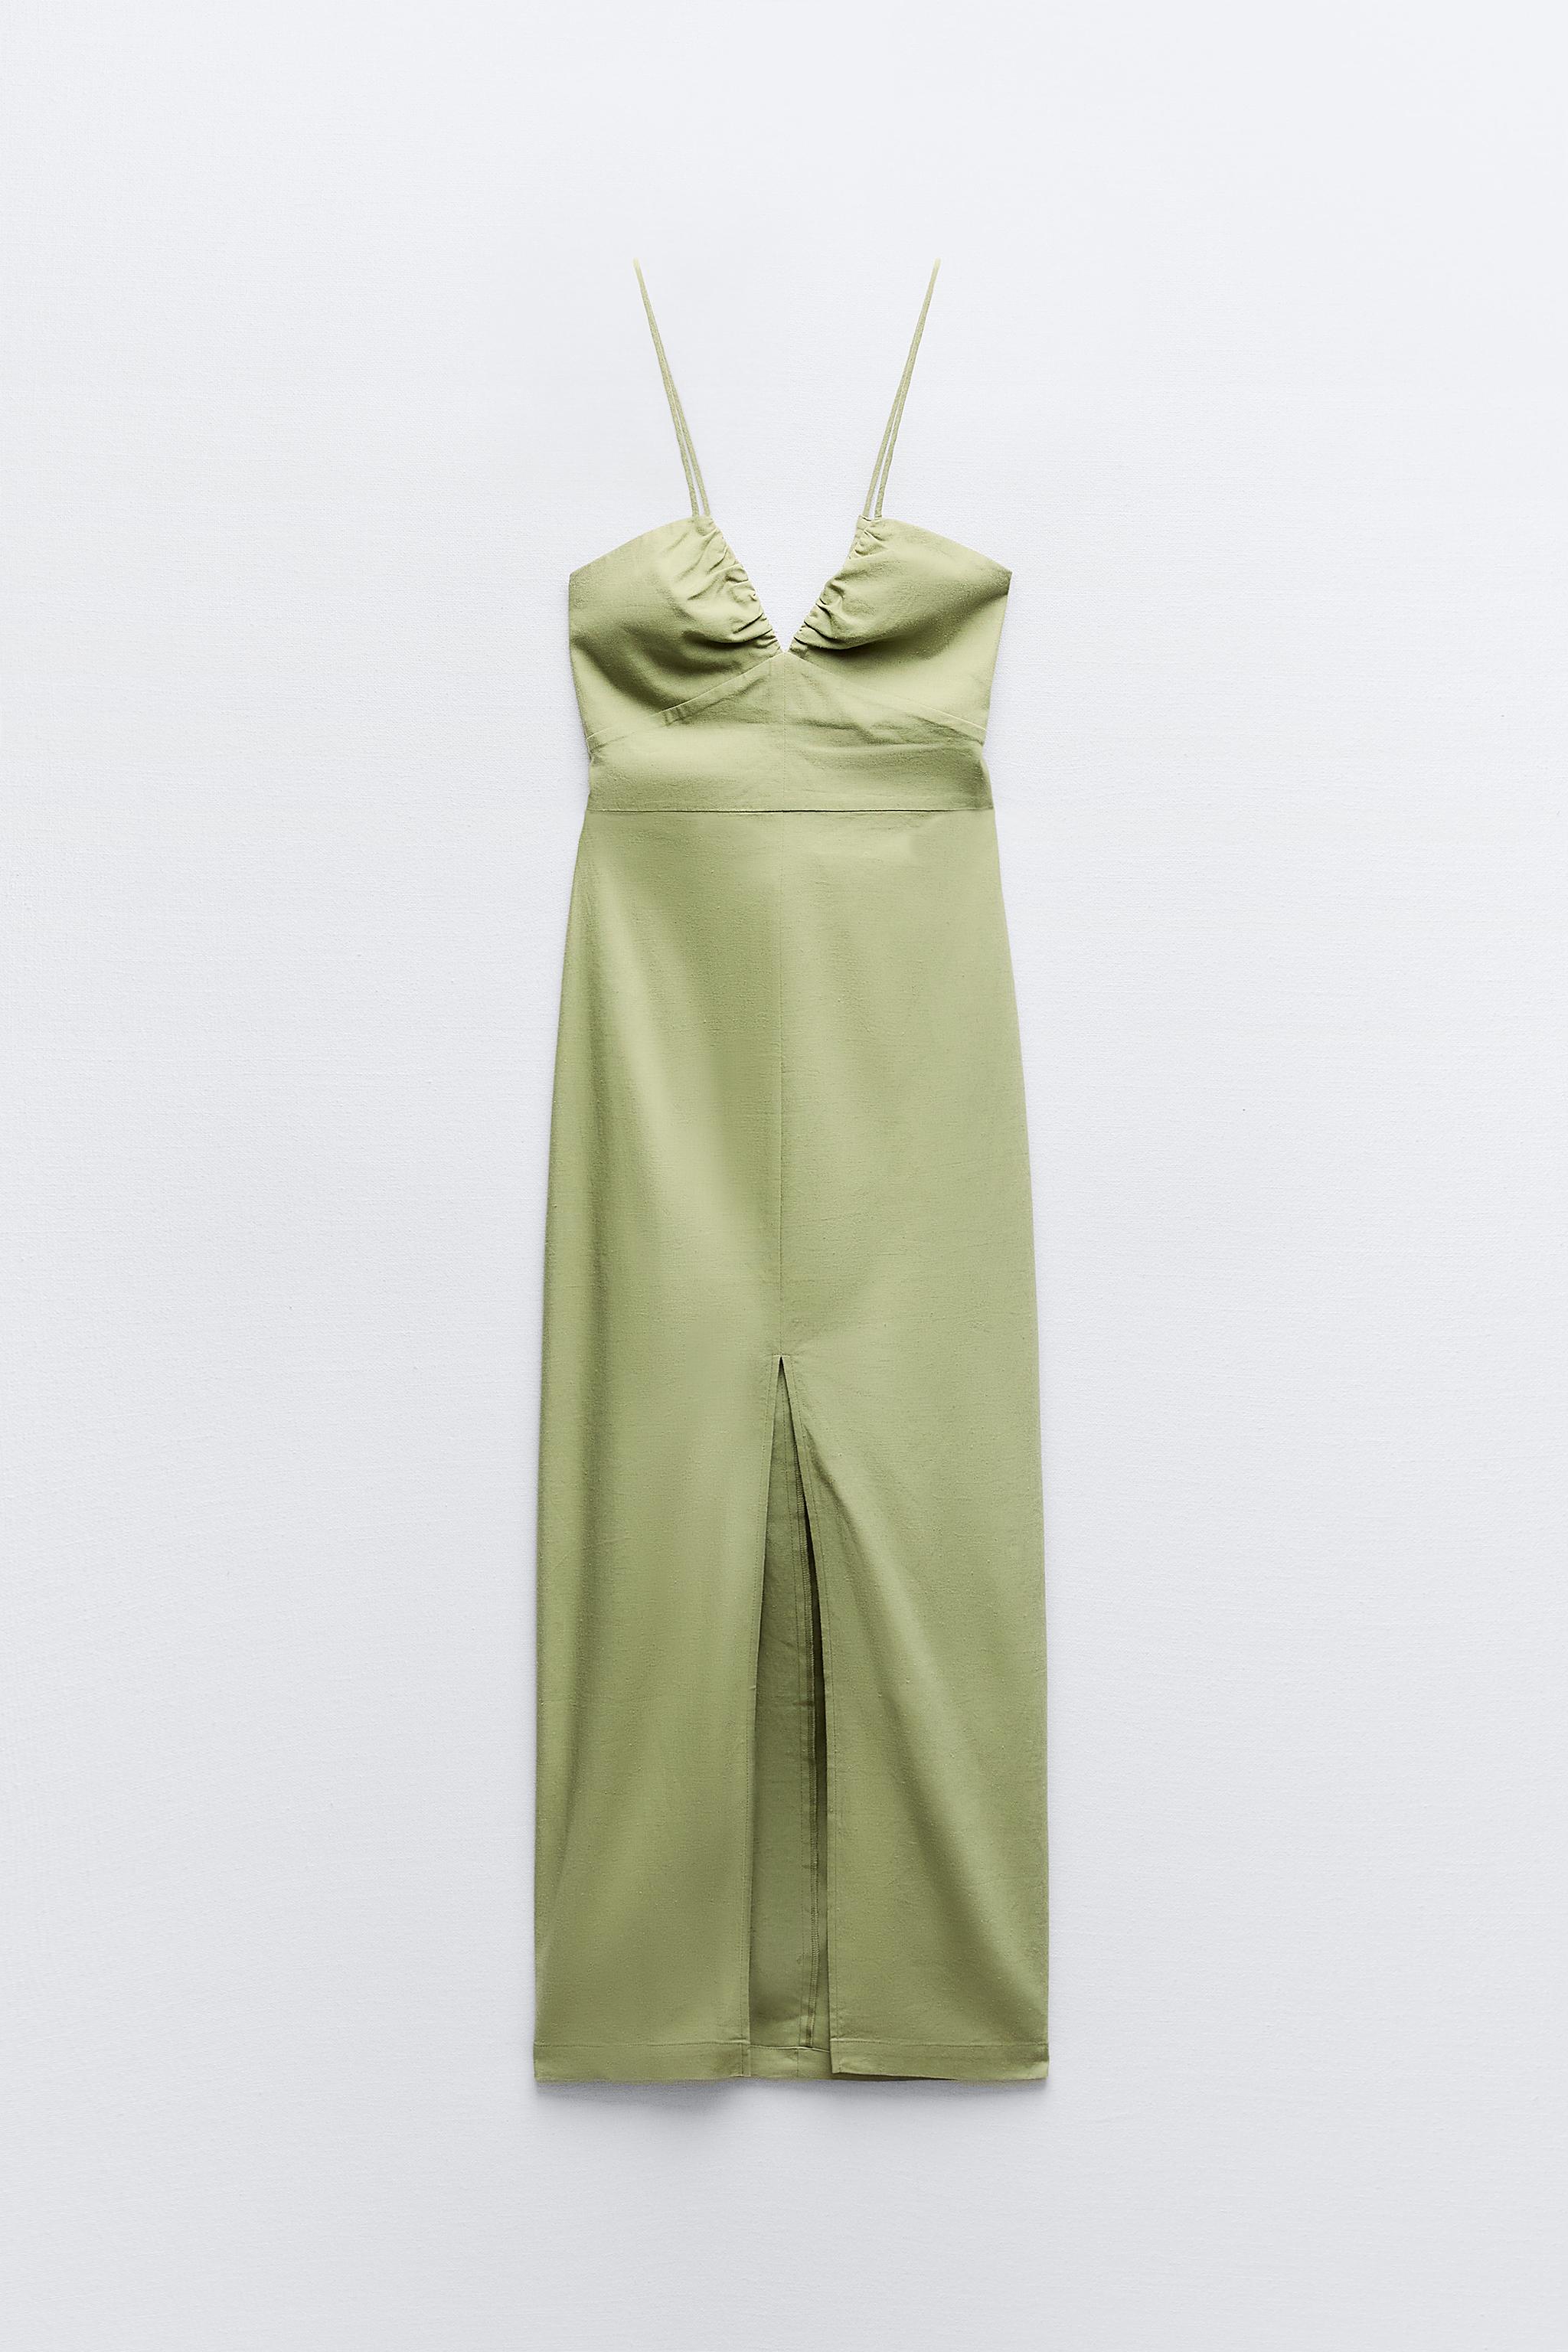 ZARA the Zoe Dress in moss green long sleeves vacay faux wrap